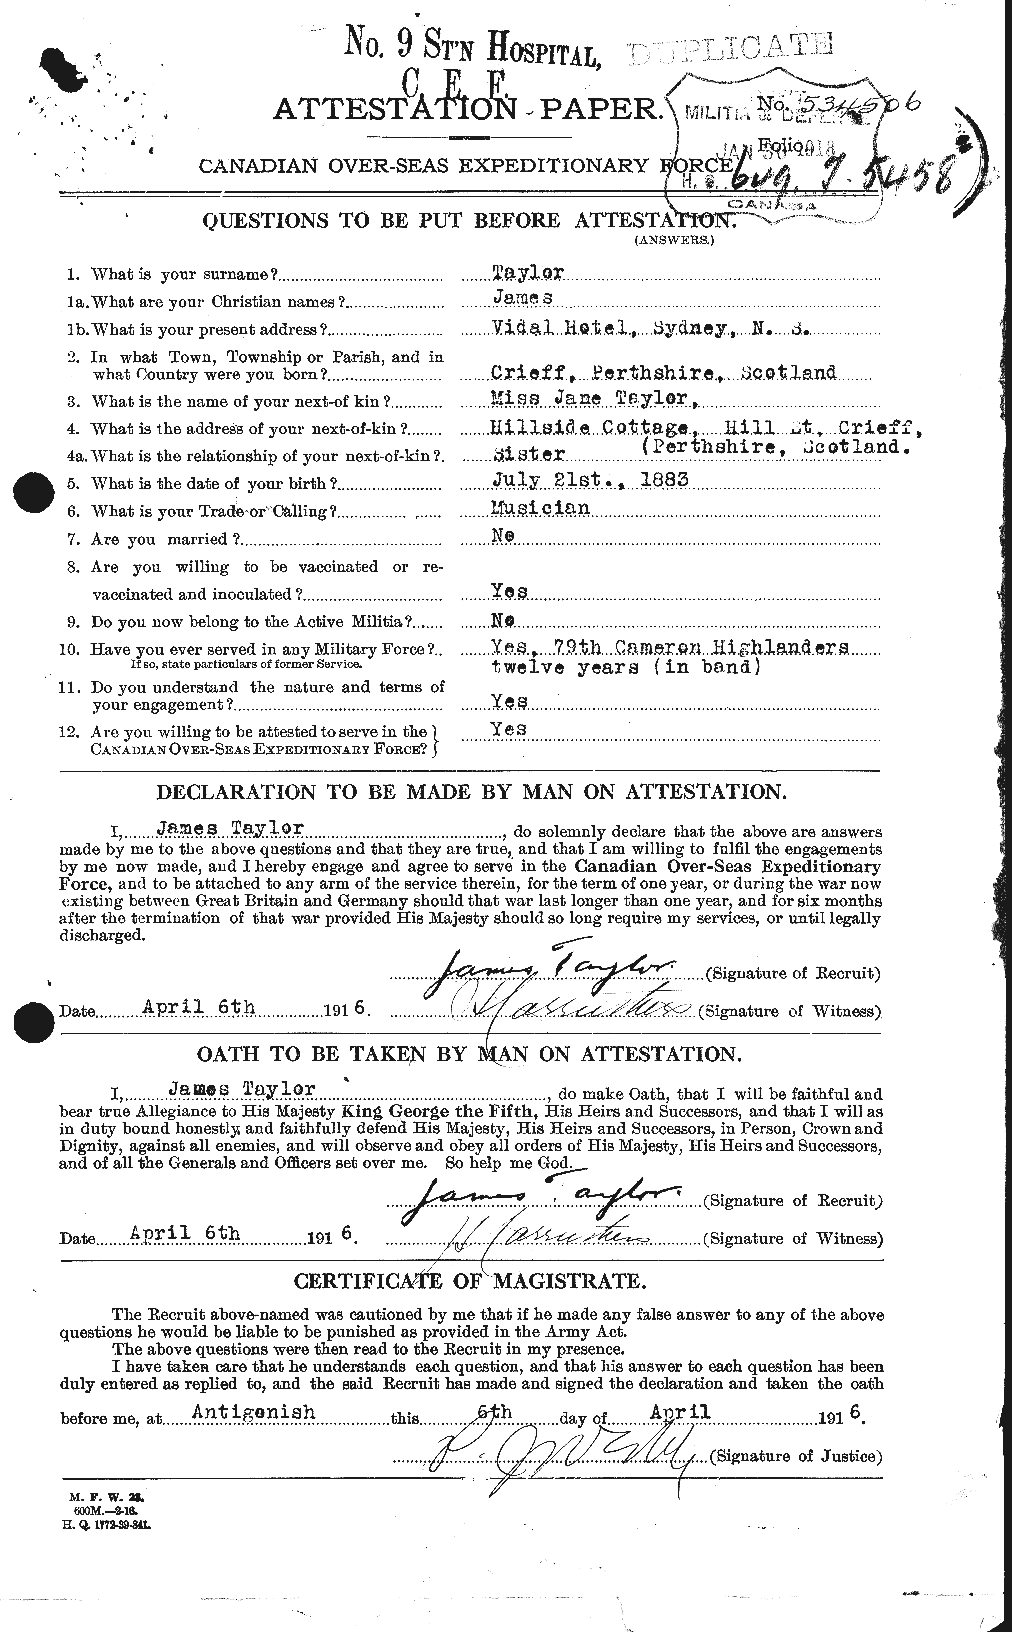 Dossiers du Personnel de la Première Guerre mondiale - CEC 626652a